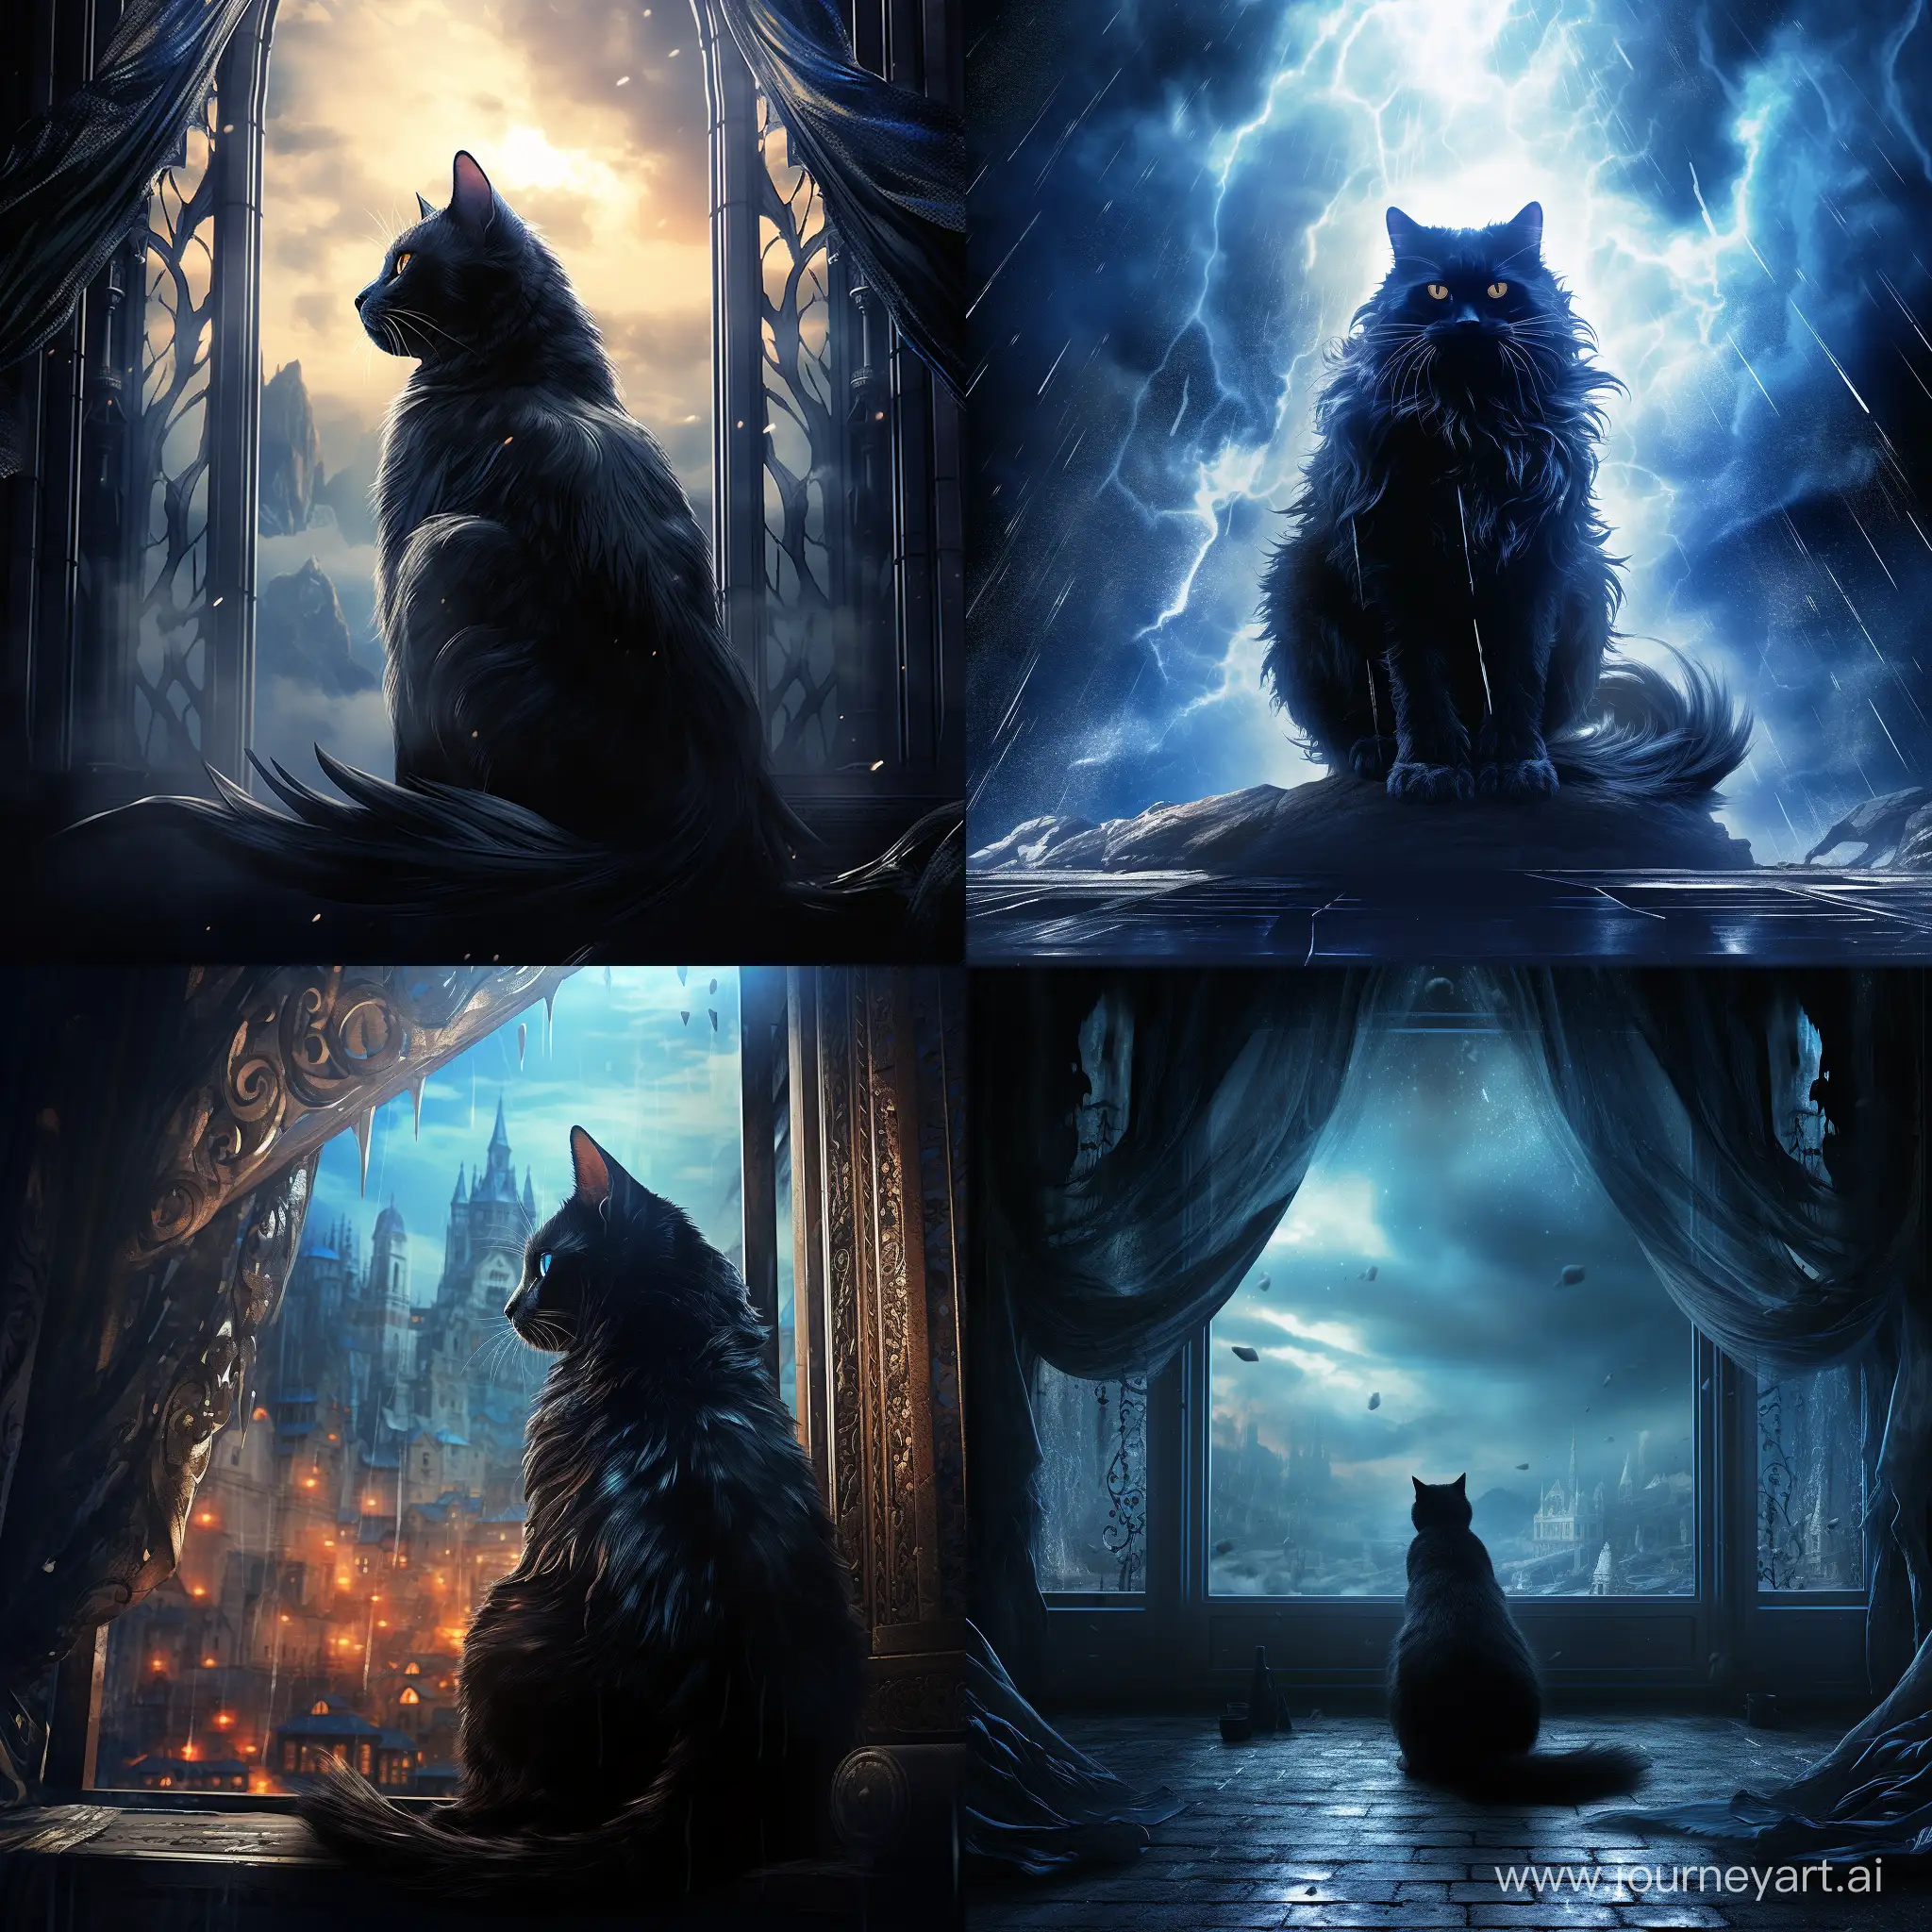 movie poster fantasy dramatic, ::1.1, голубая кошка во весь рост с черными узорами на фоне окна, полный рост, свет проникает через окна отбрасывая блики на кошку